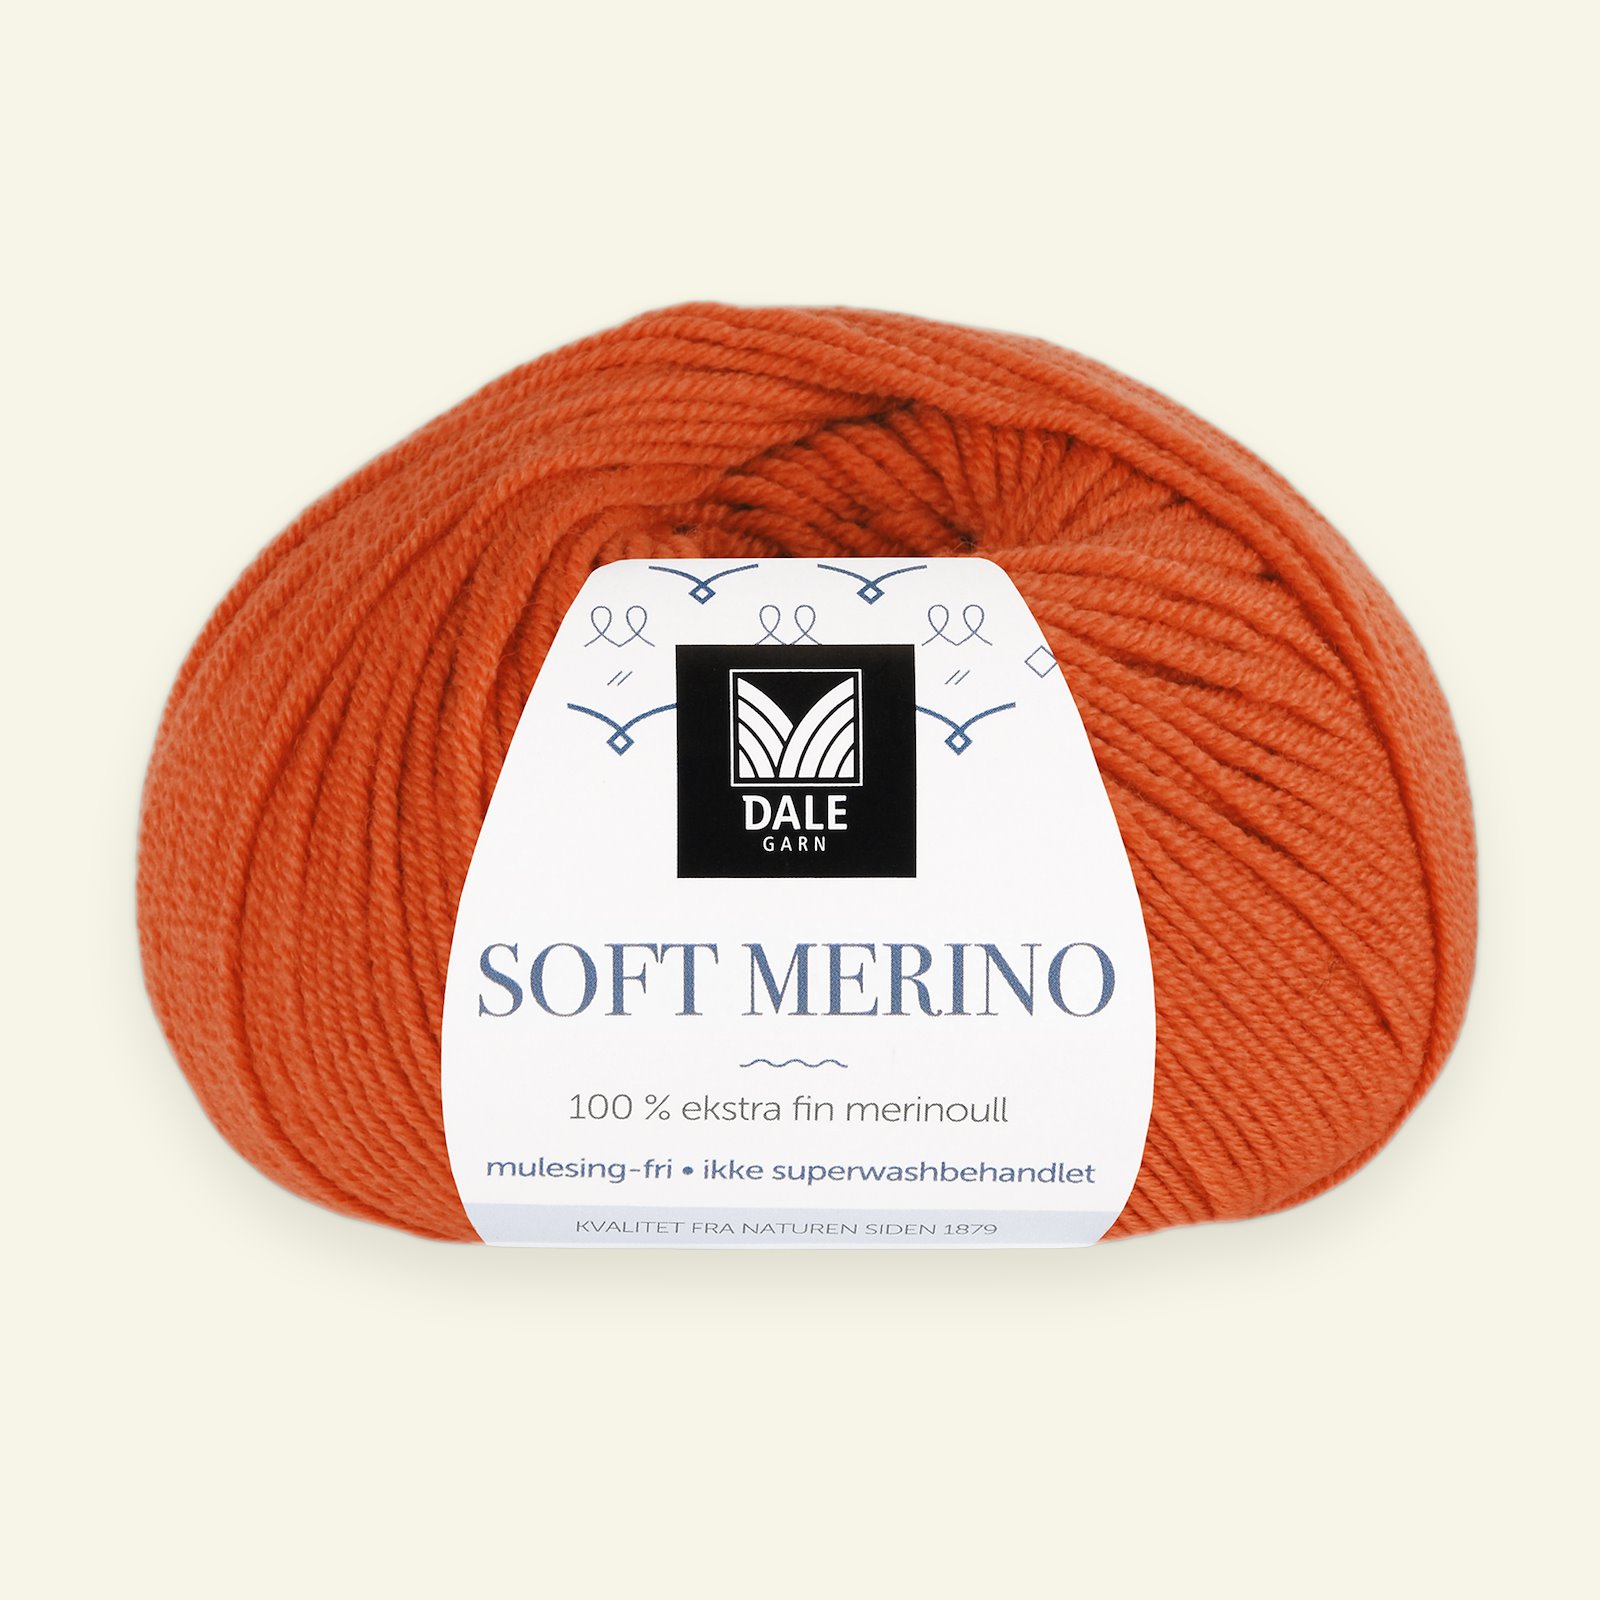 Dale Garn, 100% Extrafeine Merino-Wolle "Soft Merino", orange (3033) 90000354_pack